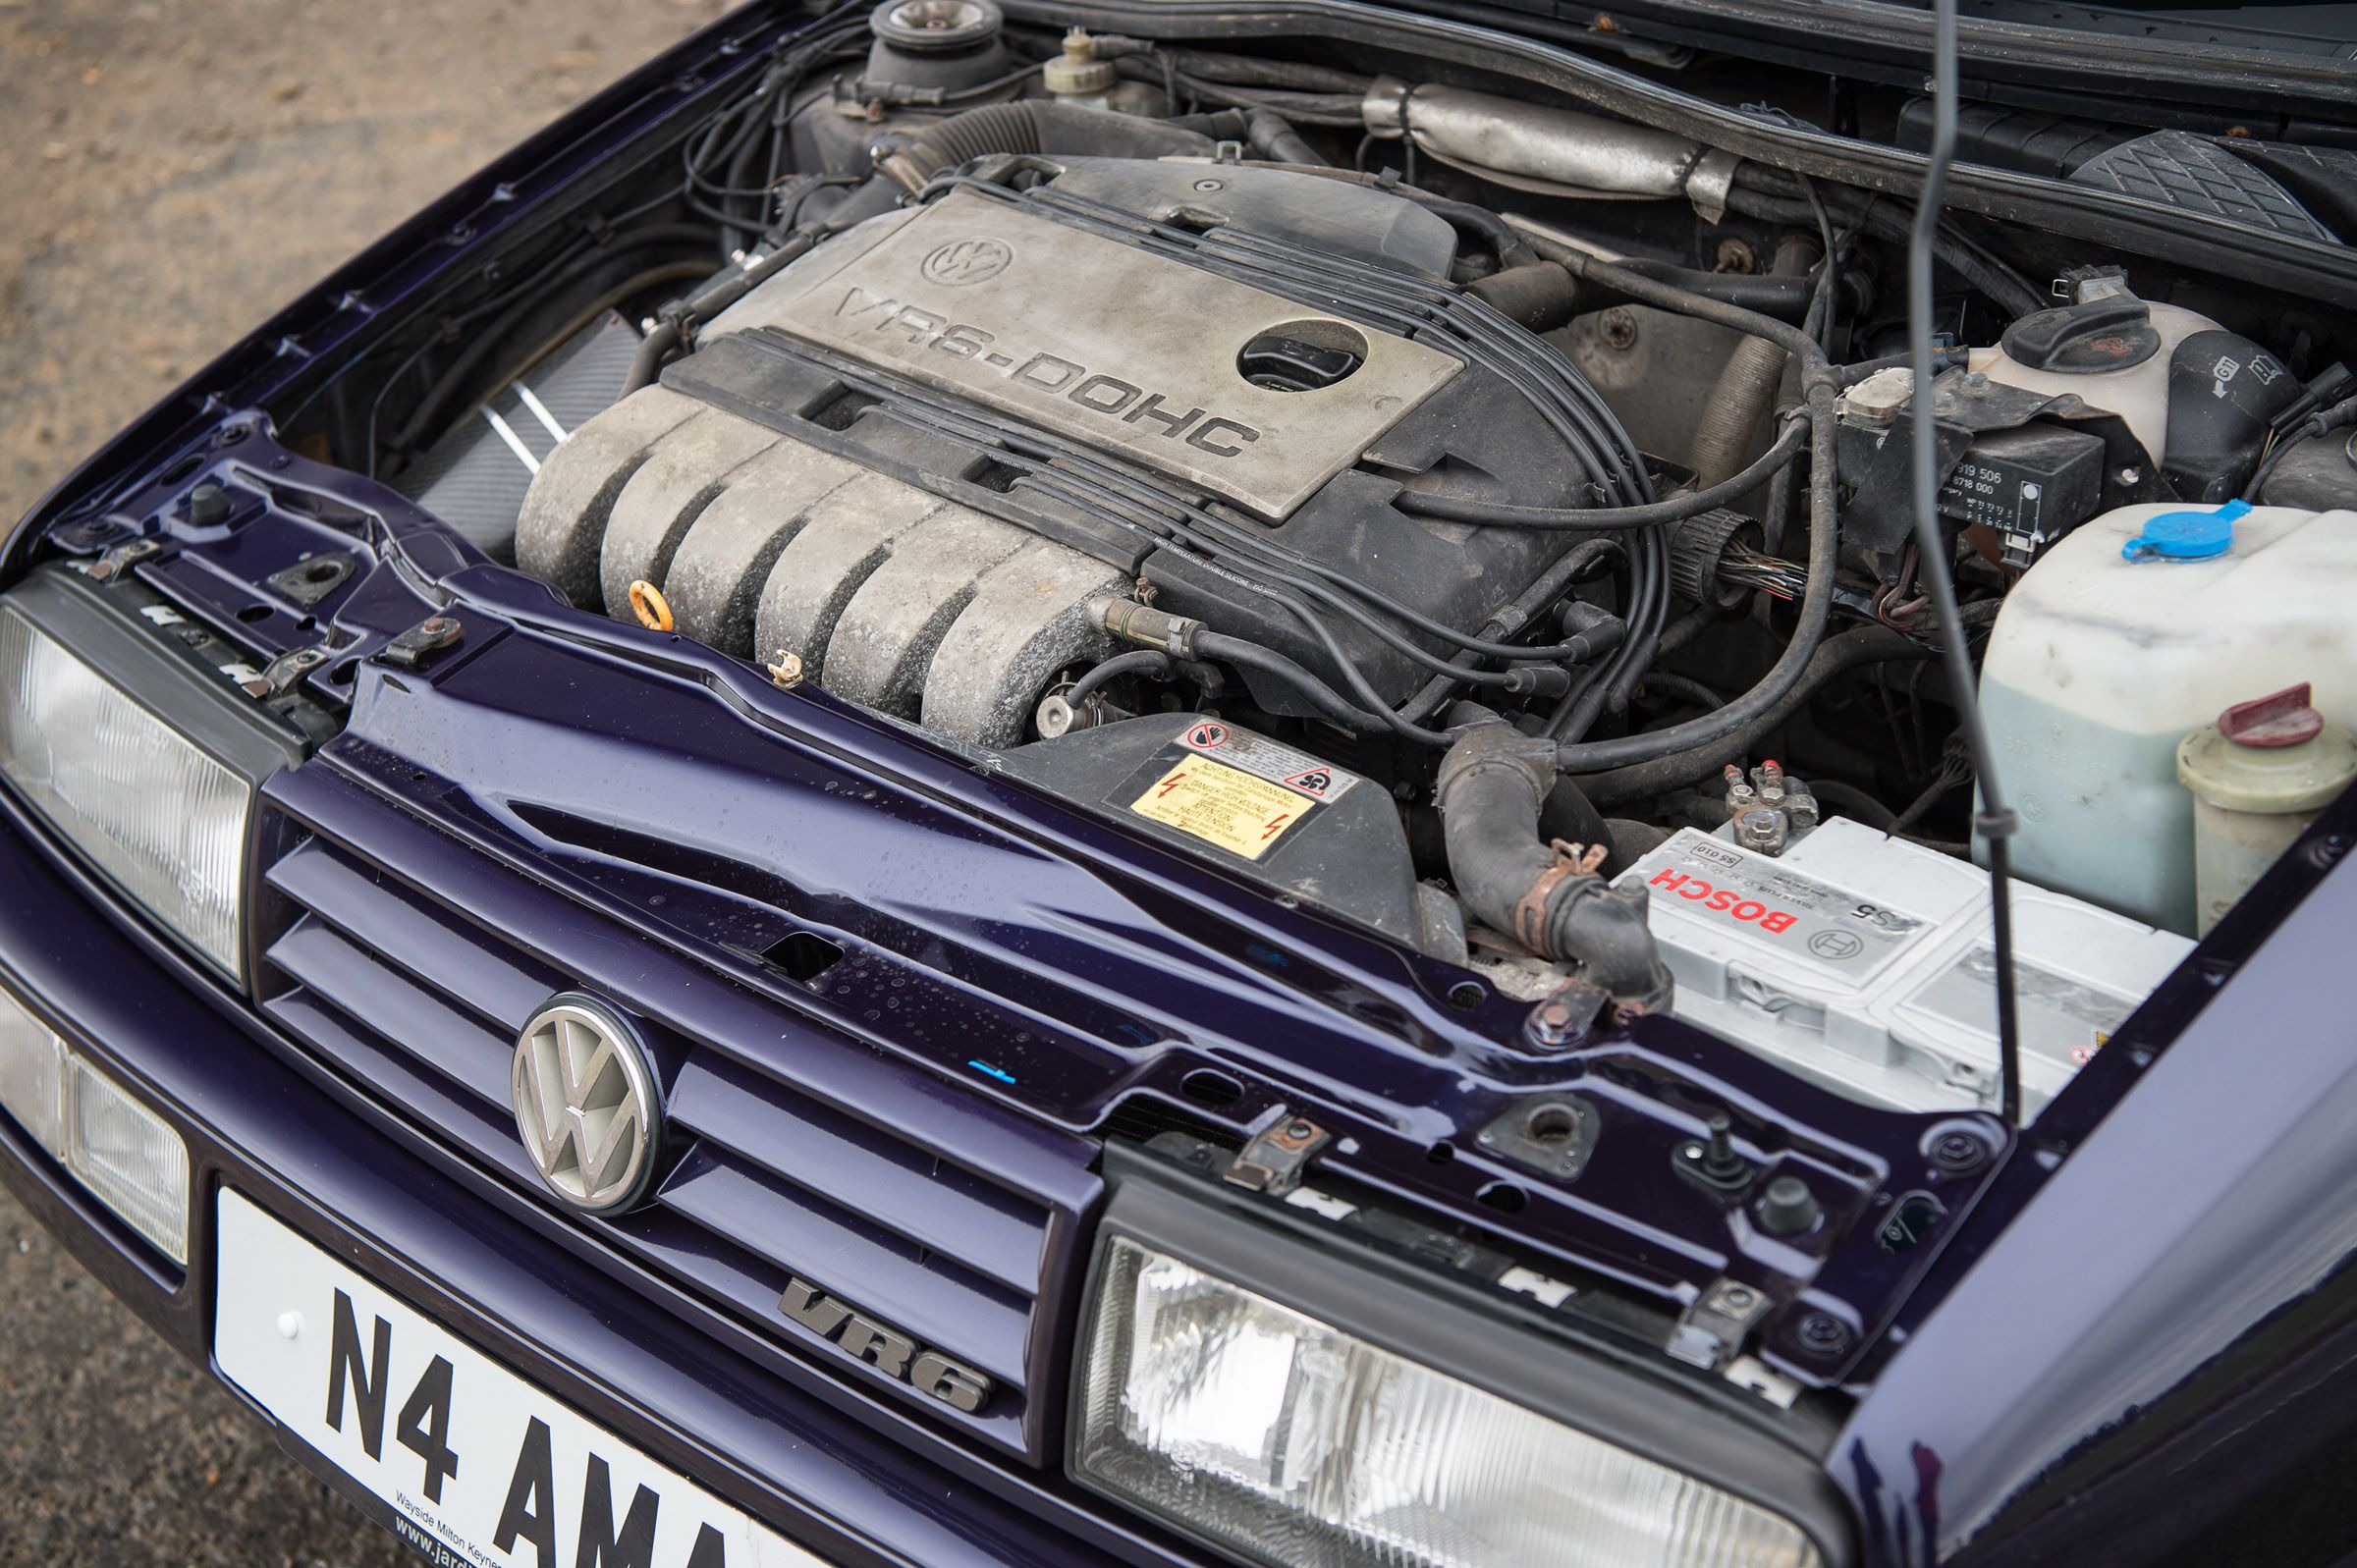 Volkswagen VR6 engine